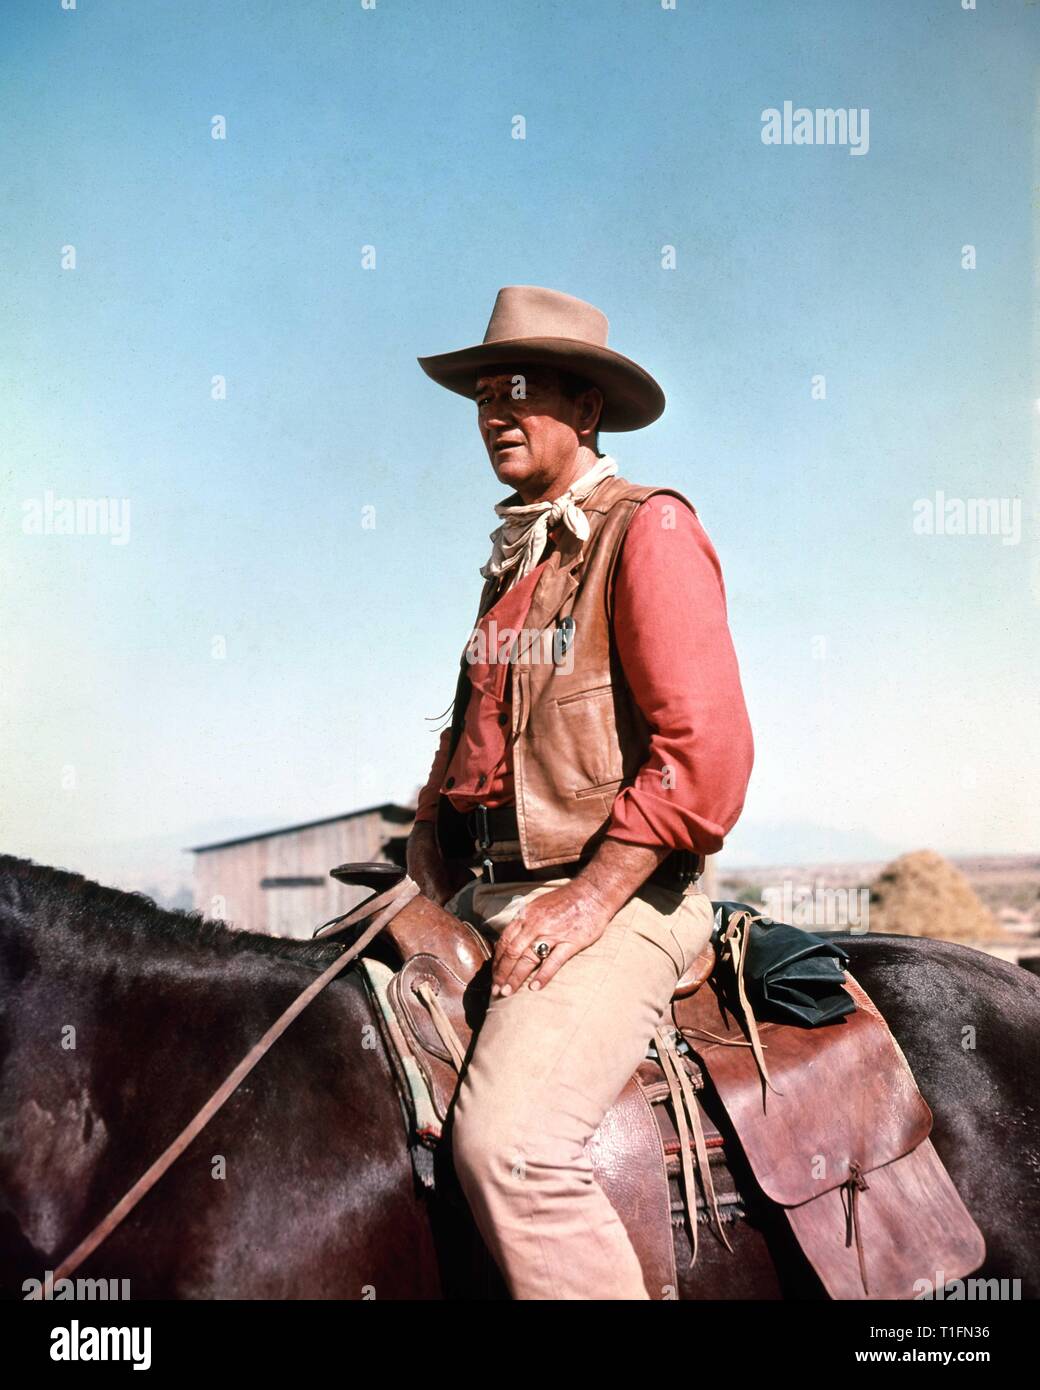 JOHN WAYNE comme Texas Ranger Jake Cutter LES COMANCHEROS réalisateur Michael Curtiz 1961 Twentieth Century Fox Banque D'Images